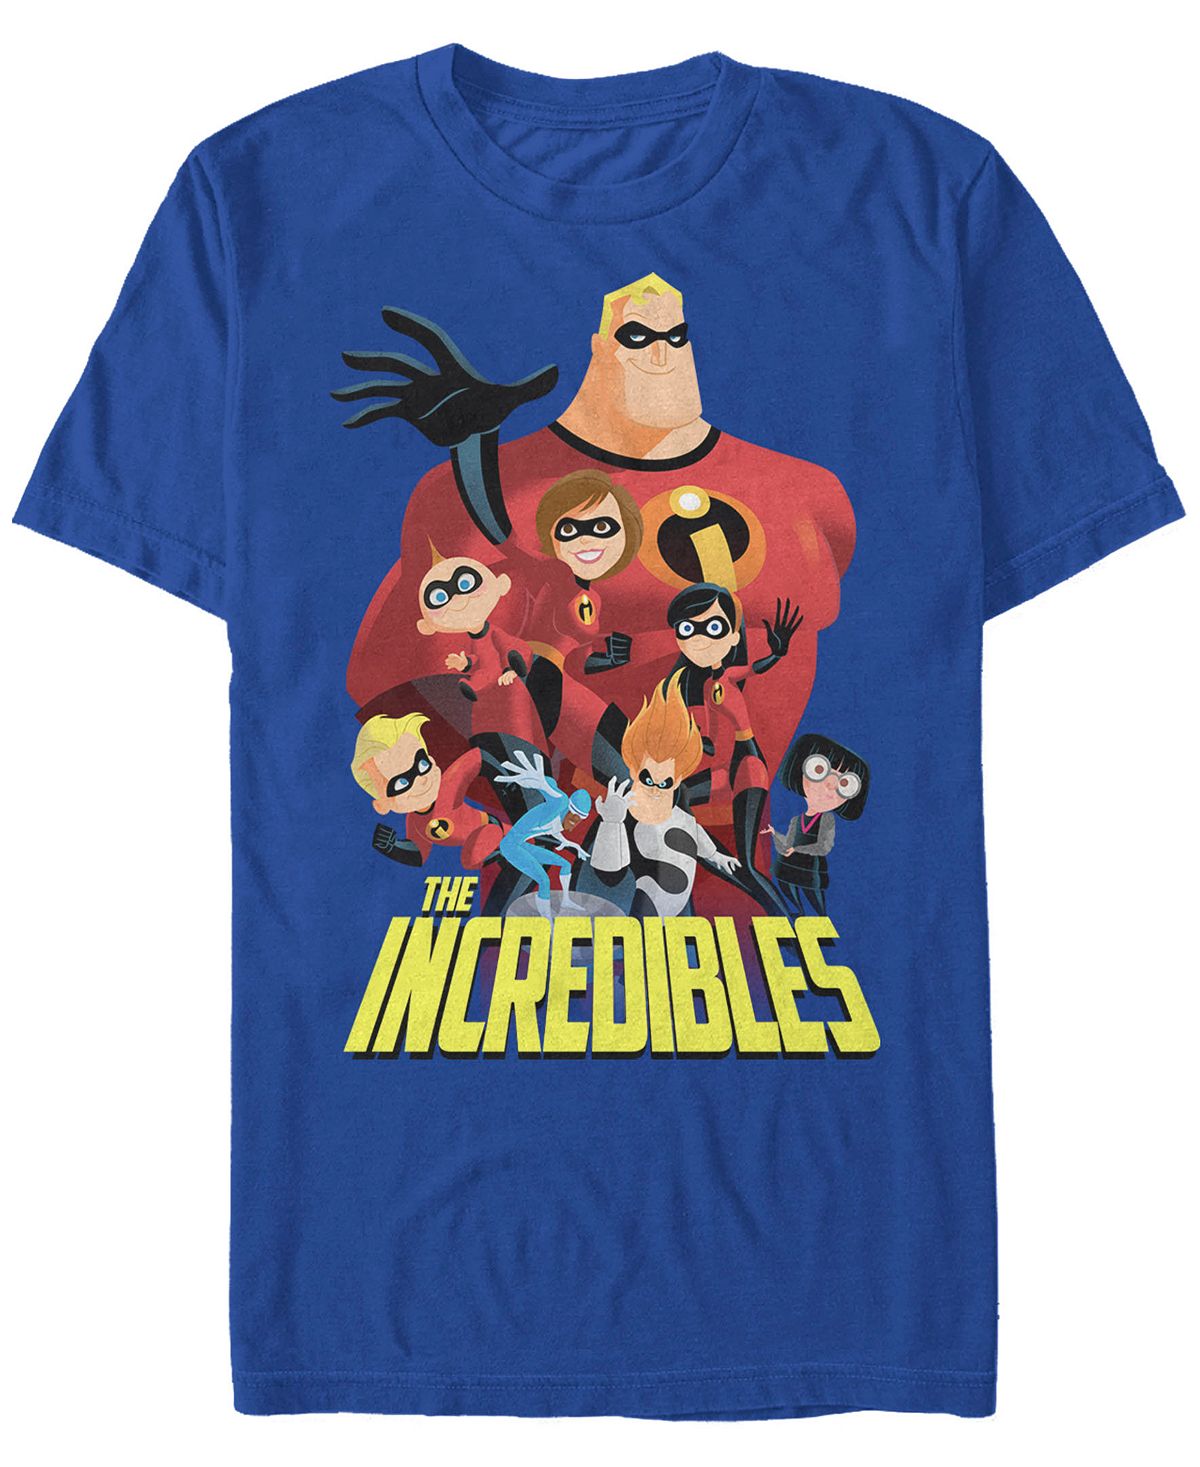 Мужская футболка с коротким рукавом disney pixar incredibles group shot Fifth Sun